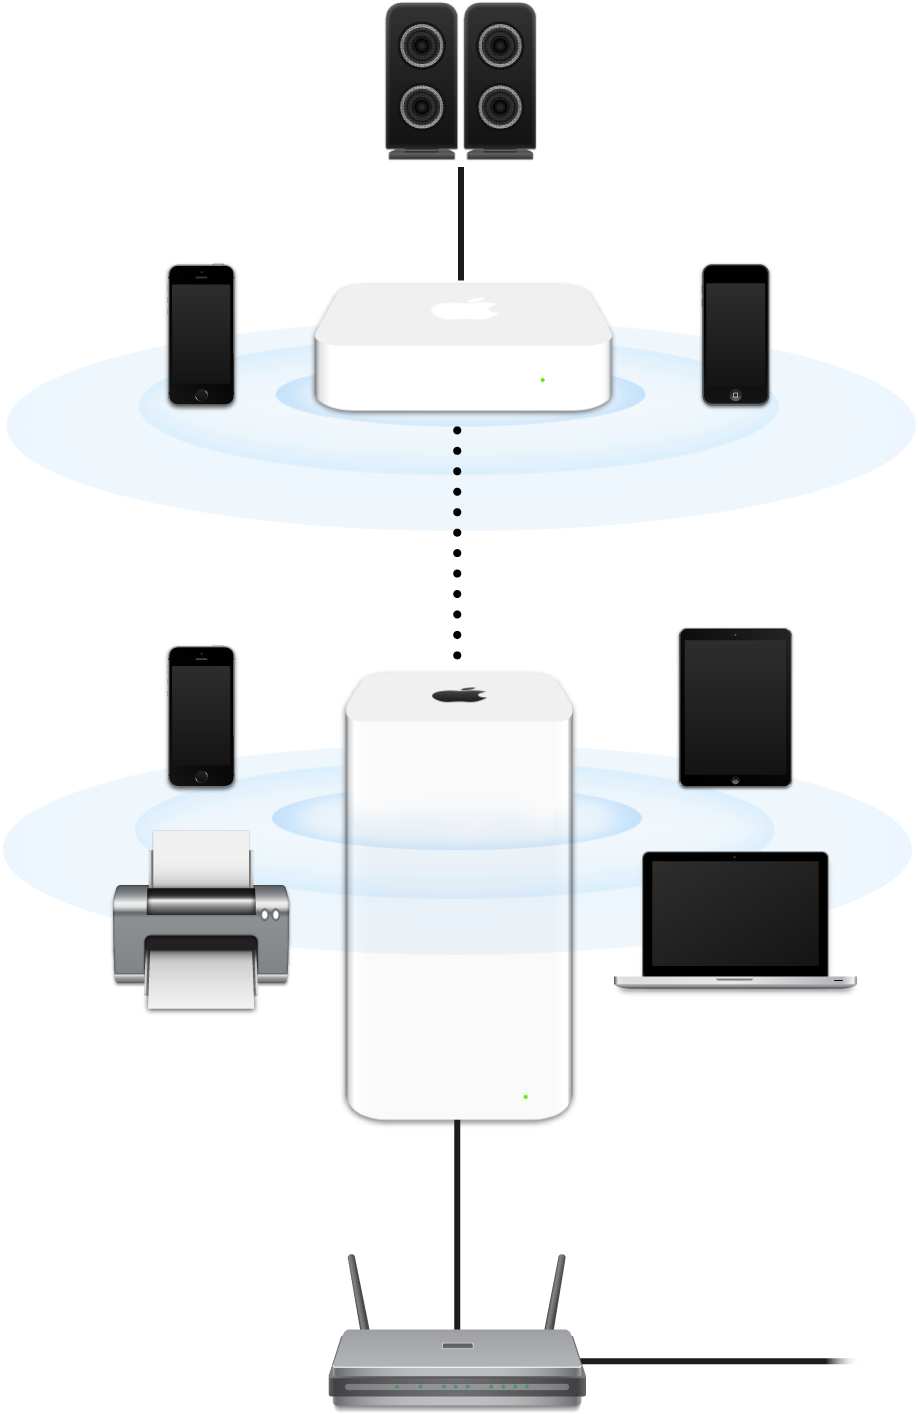 Et udvidet netværk, inkl. en AirPort Extreme og en AirPort Express, som er sluttet til et modem og sender til forskellige enheder.